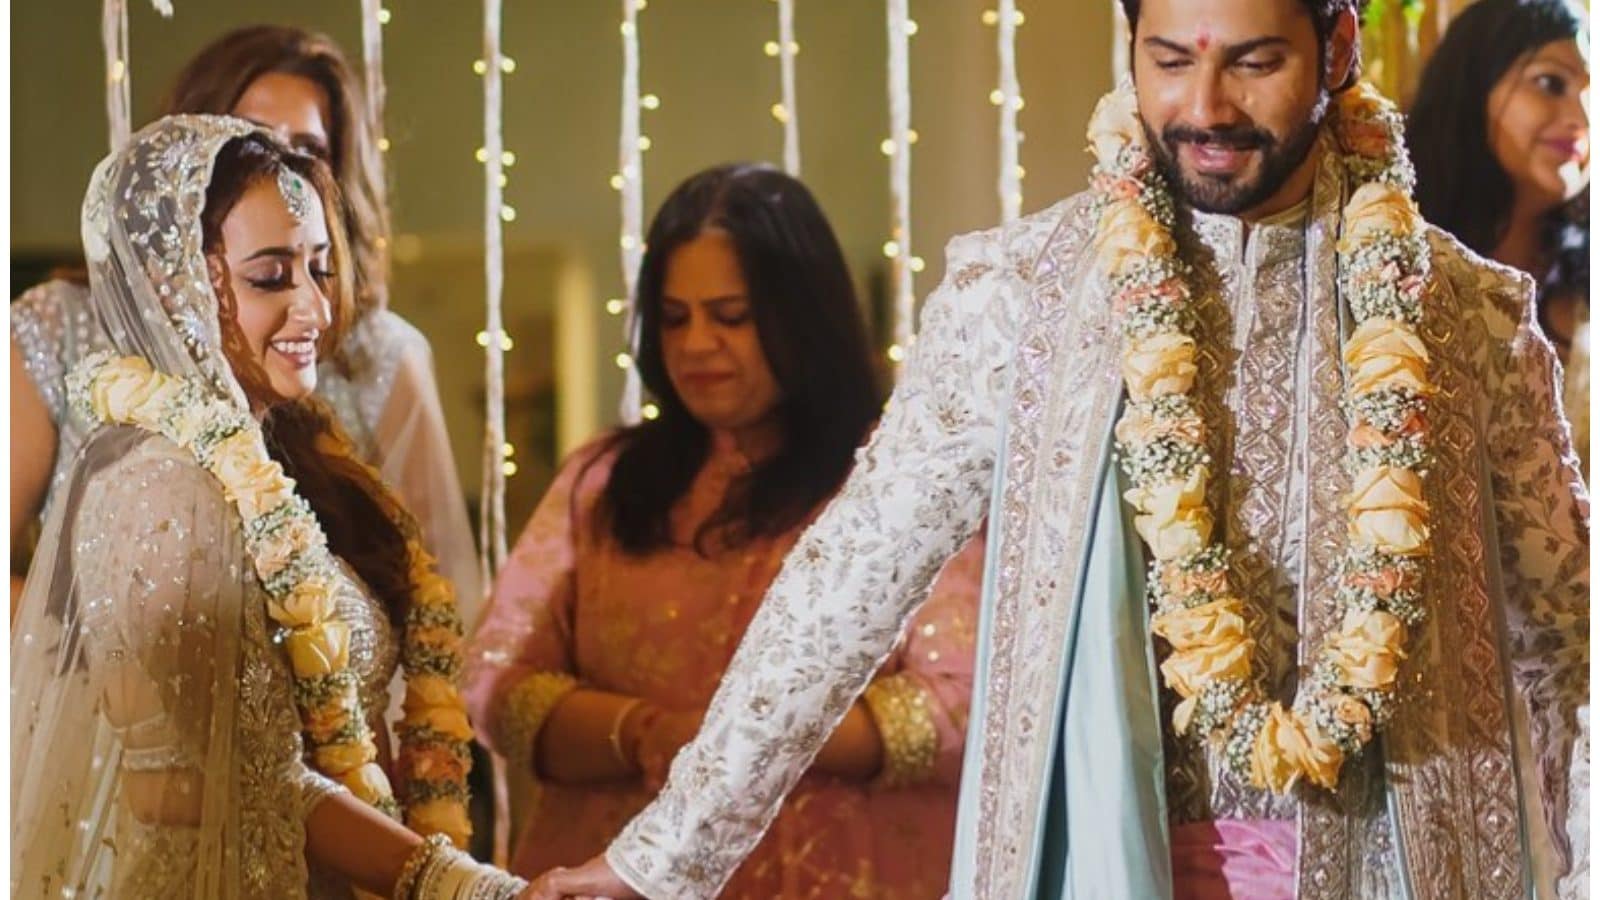 Varun Dhawan, Neetu Kapoor, Anil Kapoor Share Their Wedding Photos to Promote Jug Jugg Jeeyo